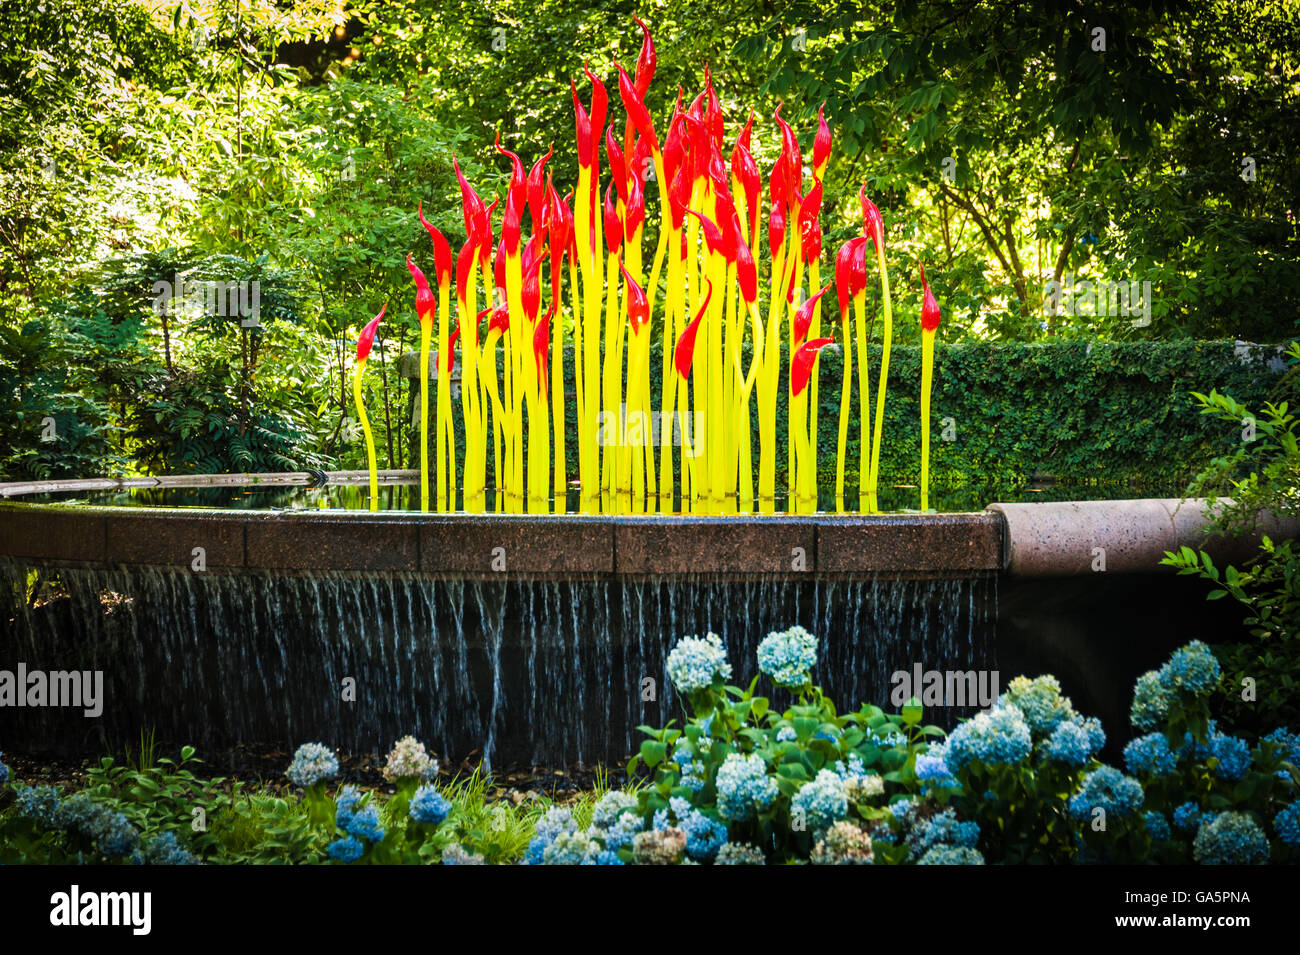 Exposición 'Chihuly in the Garden' del Jardín Botánico de Atlanta con escultura de vidrio 'Fern Dell Paintbrushes' de Dale Chihuly. (EE. UU.) Foto de stock